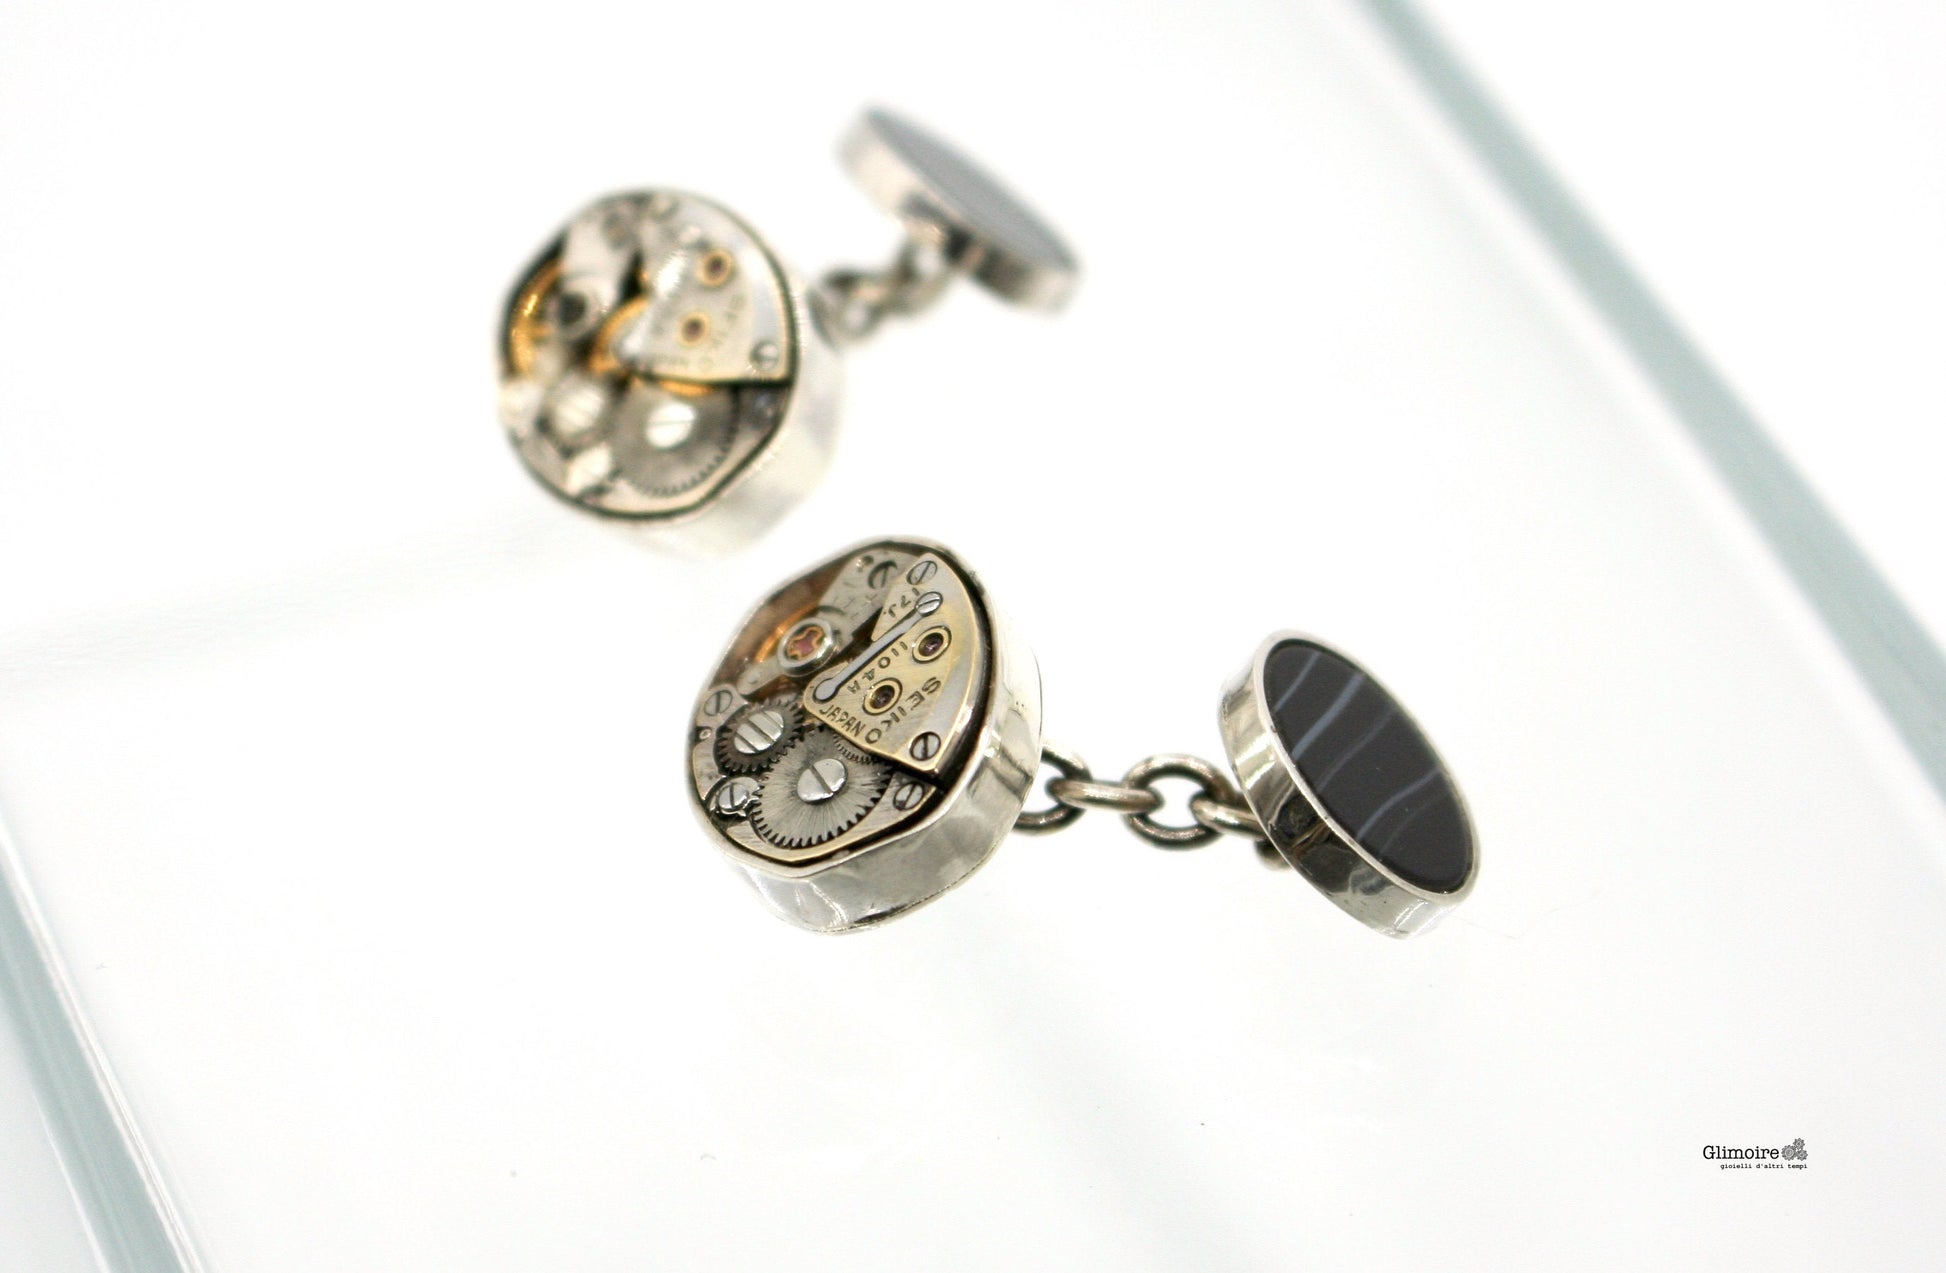 Gemelli a catena con meccanismi di orologio Seiko e onice nero. Gemelli ovali con movimenti vintage, In argento  art.319 - Glimoire